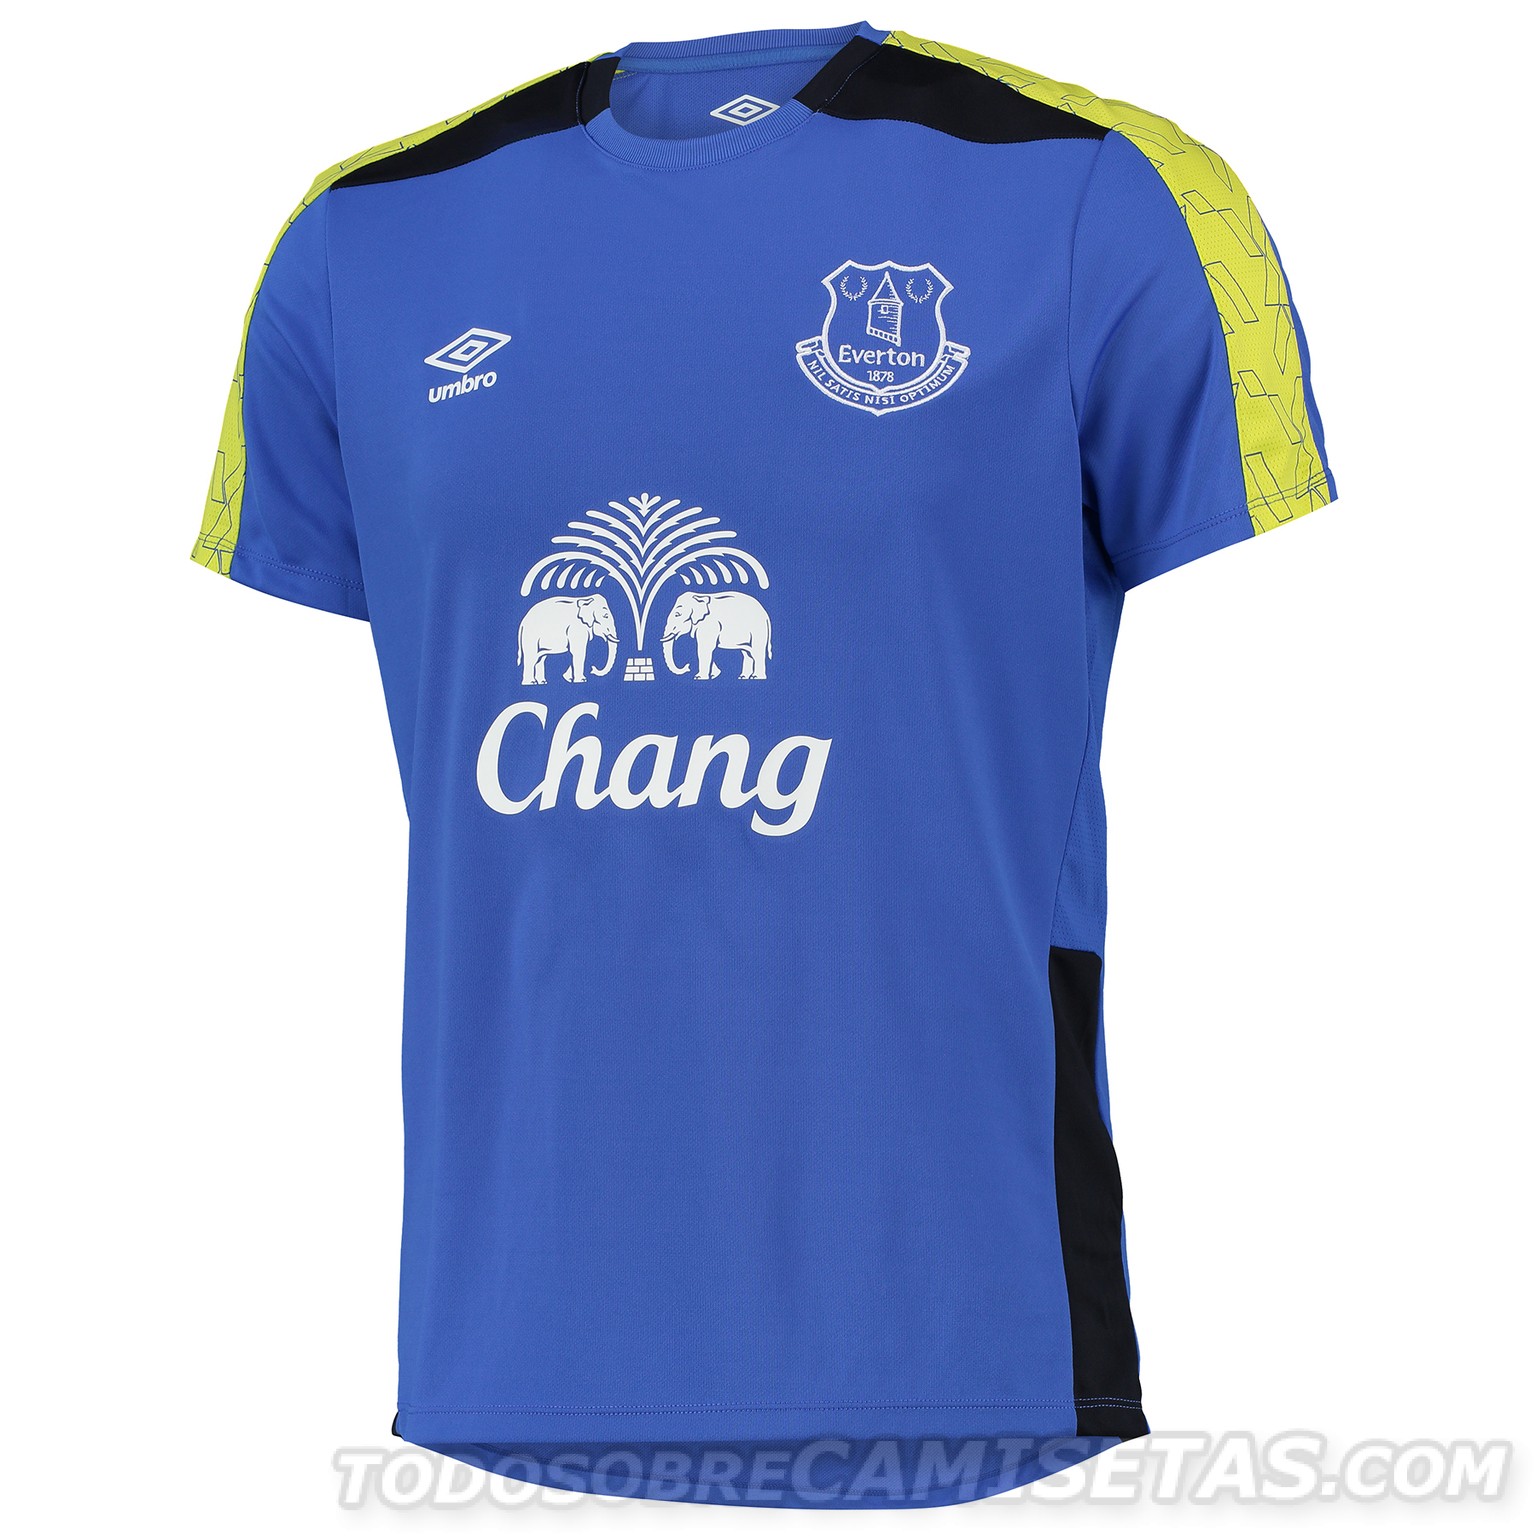 Umbro Everton Fc Entrenamiento Nuevo Adulto T Shirt Top Negro Rosa último XXL 2XL 